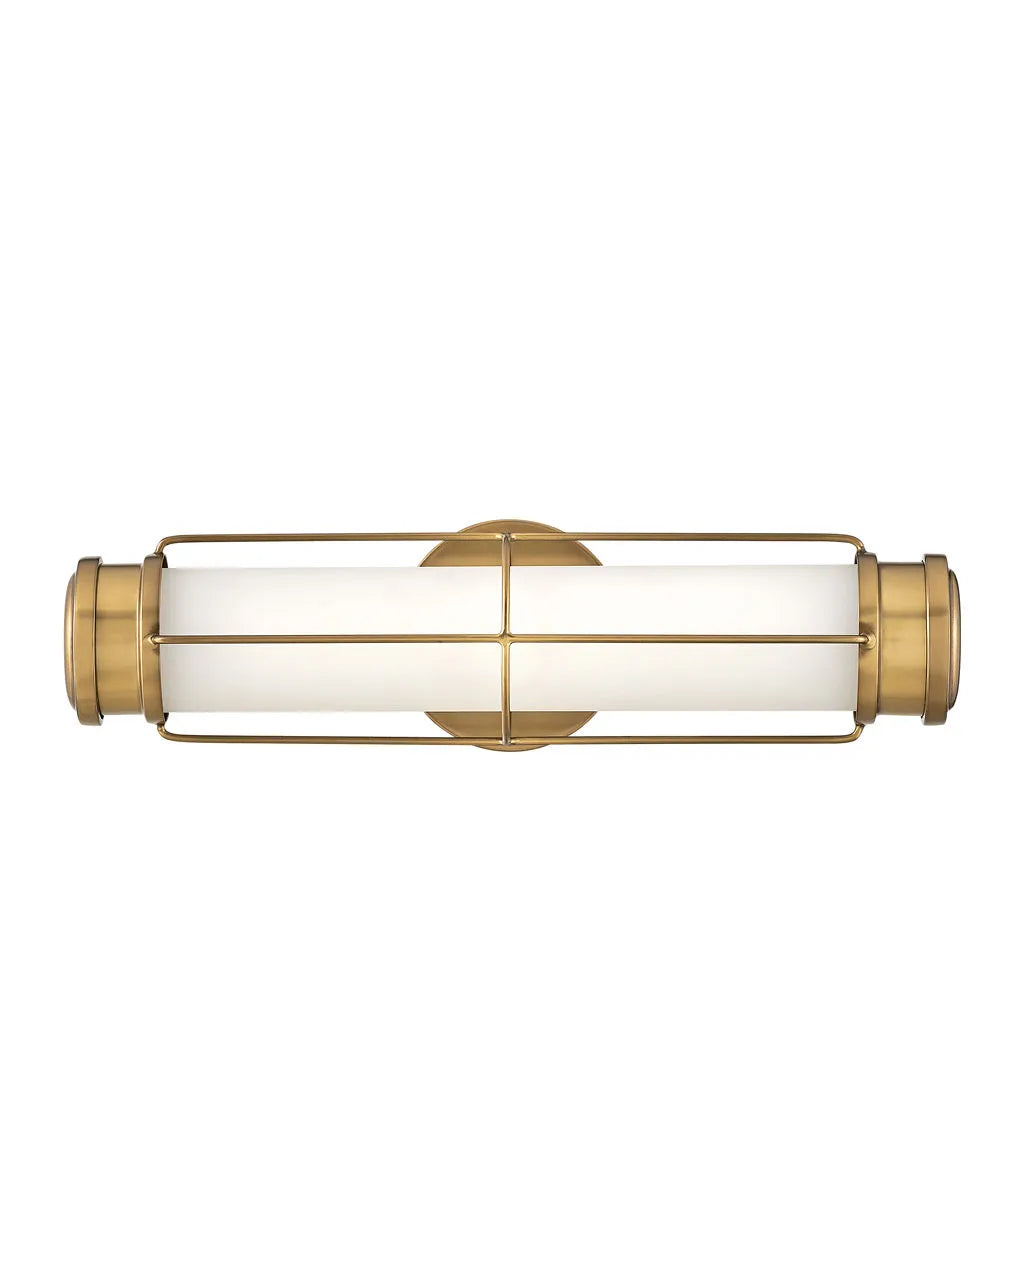 Bath Saylor - Small LED-Hinkley Lighting-HINKLEY-54300PN-Wall LightingPolished Nickel-3-France and Son